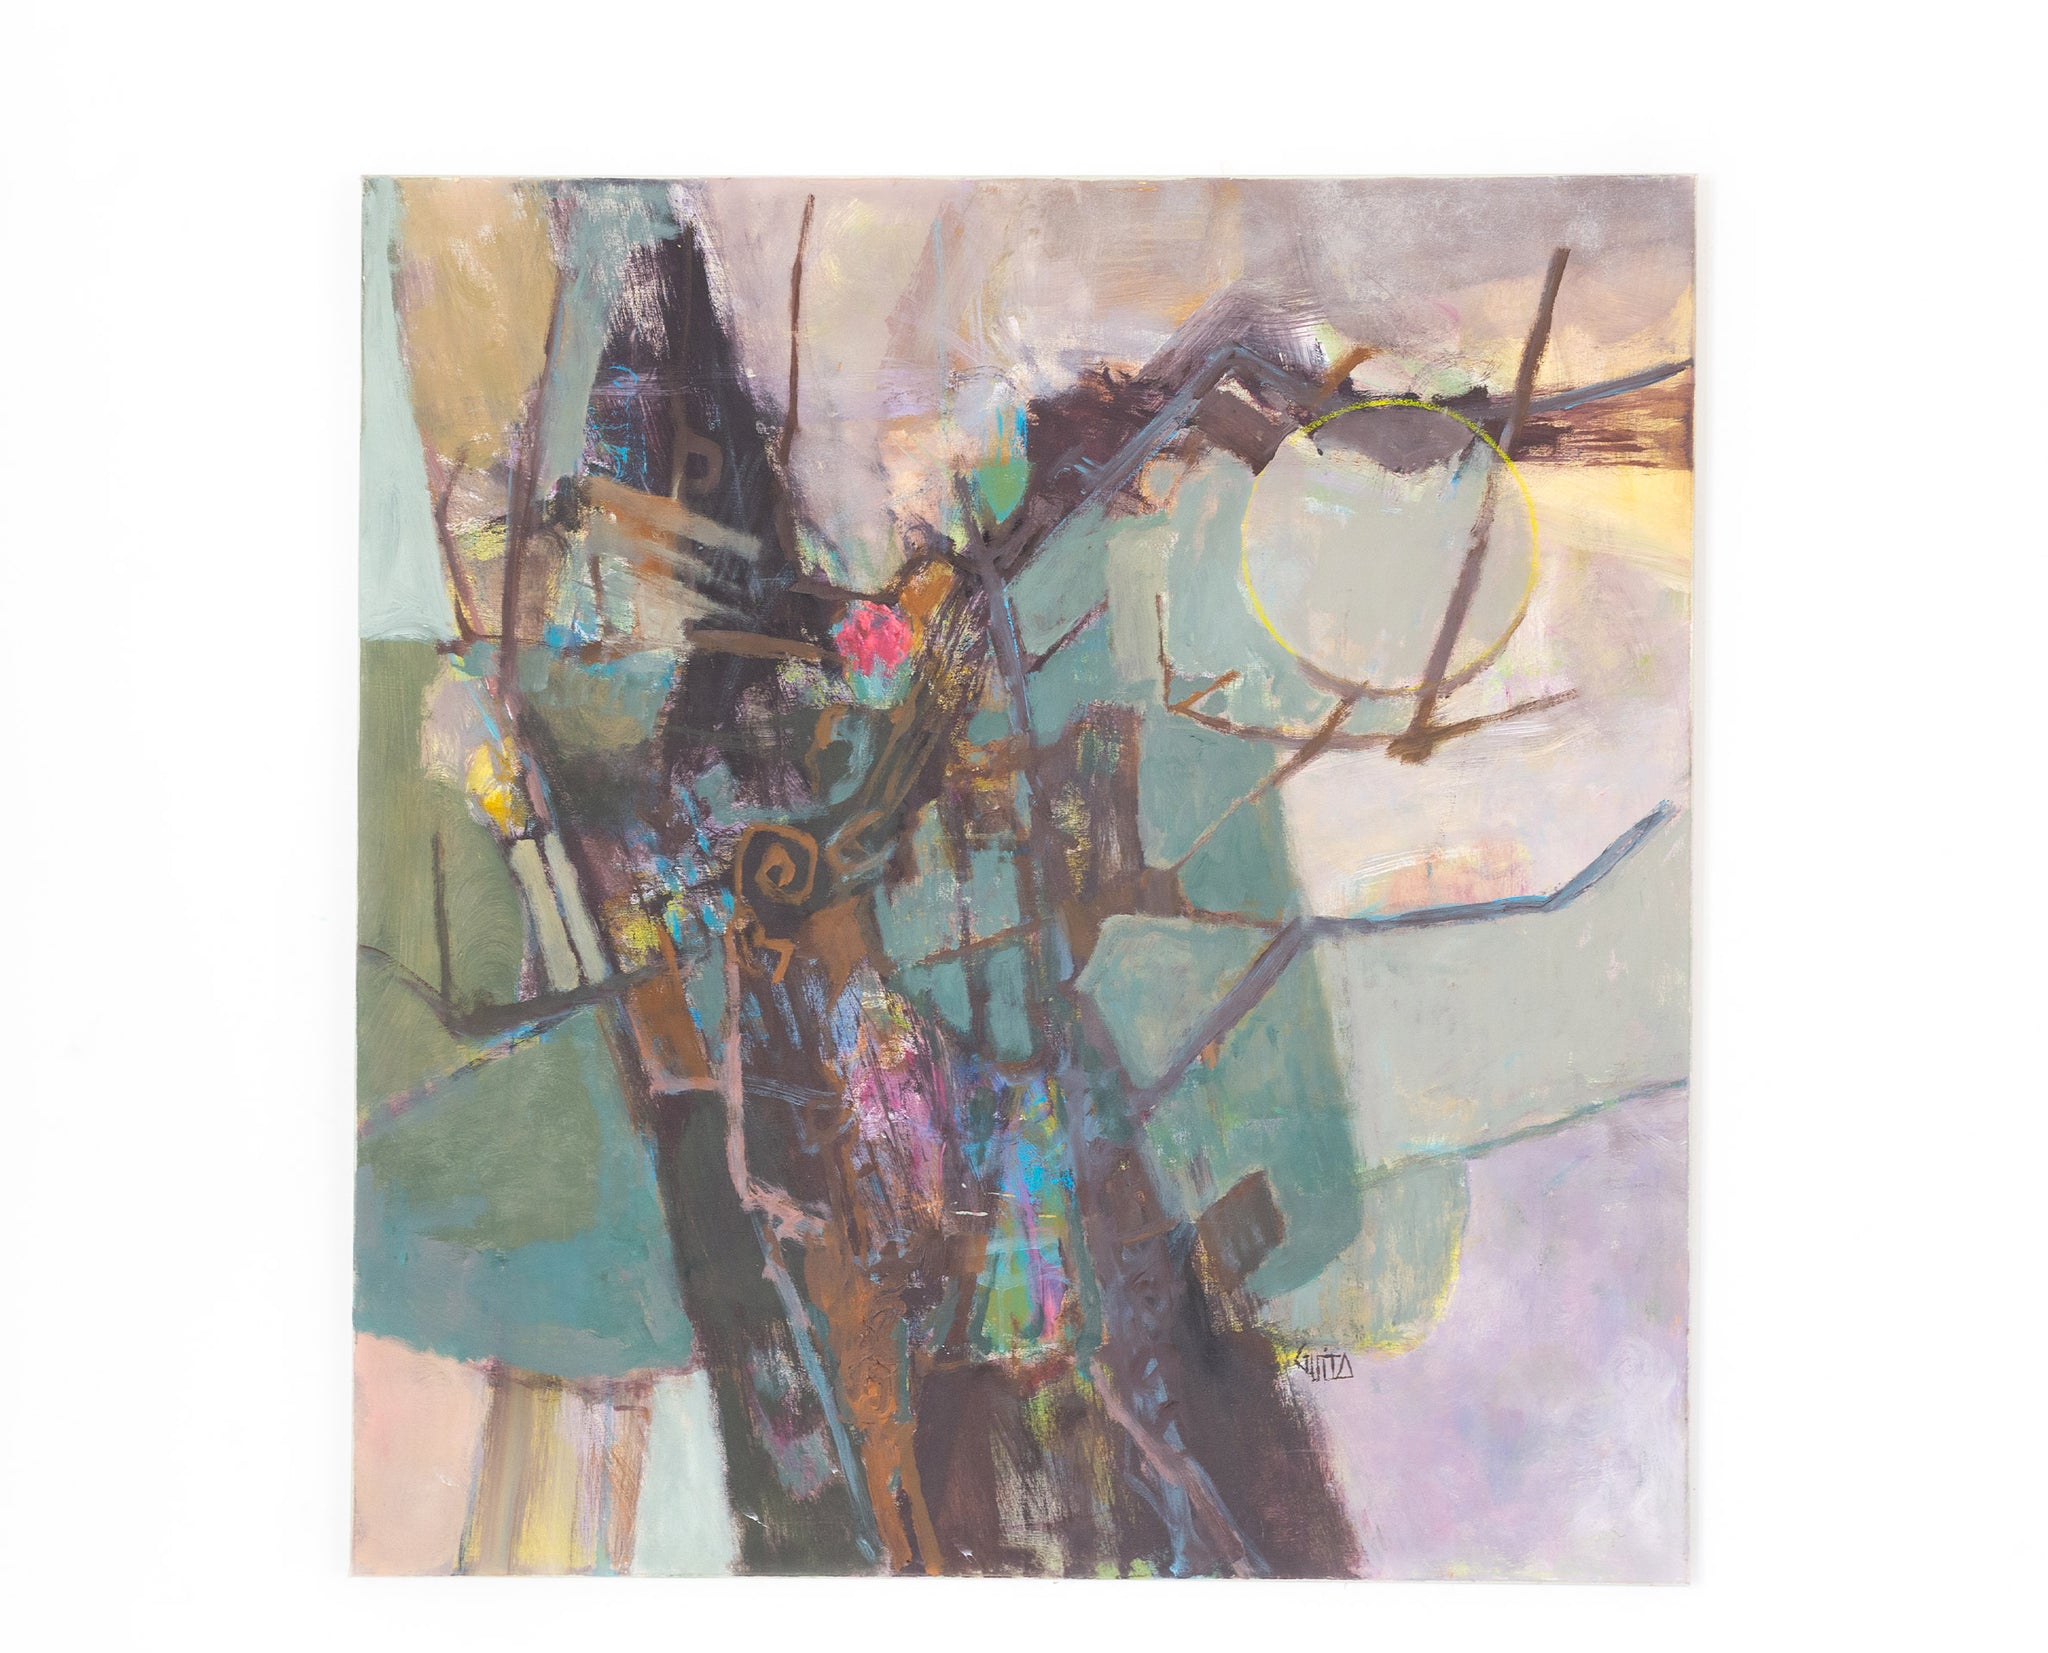 Tableau d'art du peintre Moncef GUITA, d'expression figurative décrivant l'arbre brisé dans son environnement. Œuvre aux traits graphique et aux couleurs ternes, au coup de pinceau caractéristique de Guita.